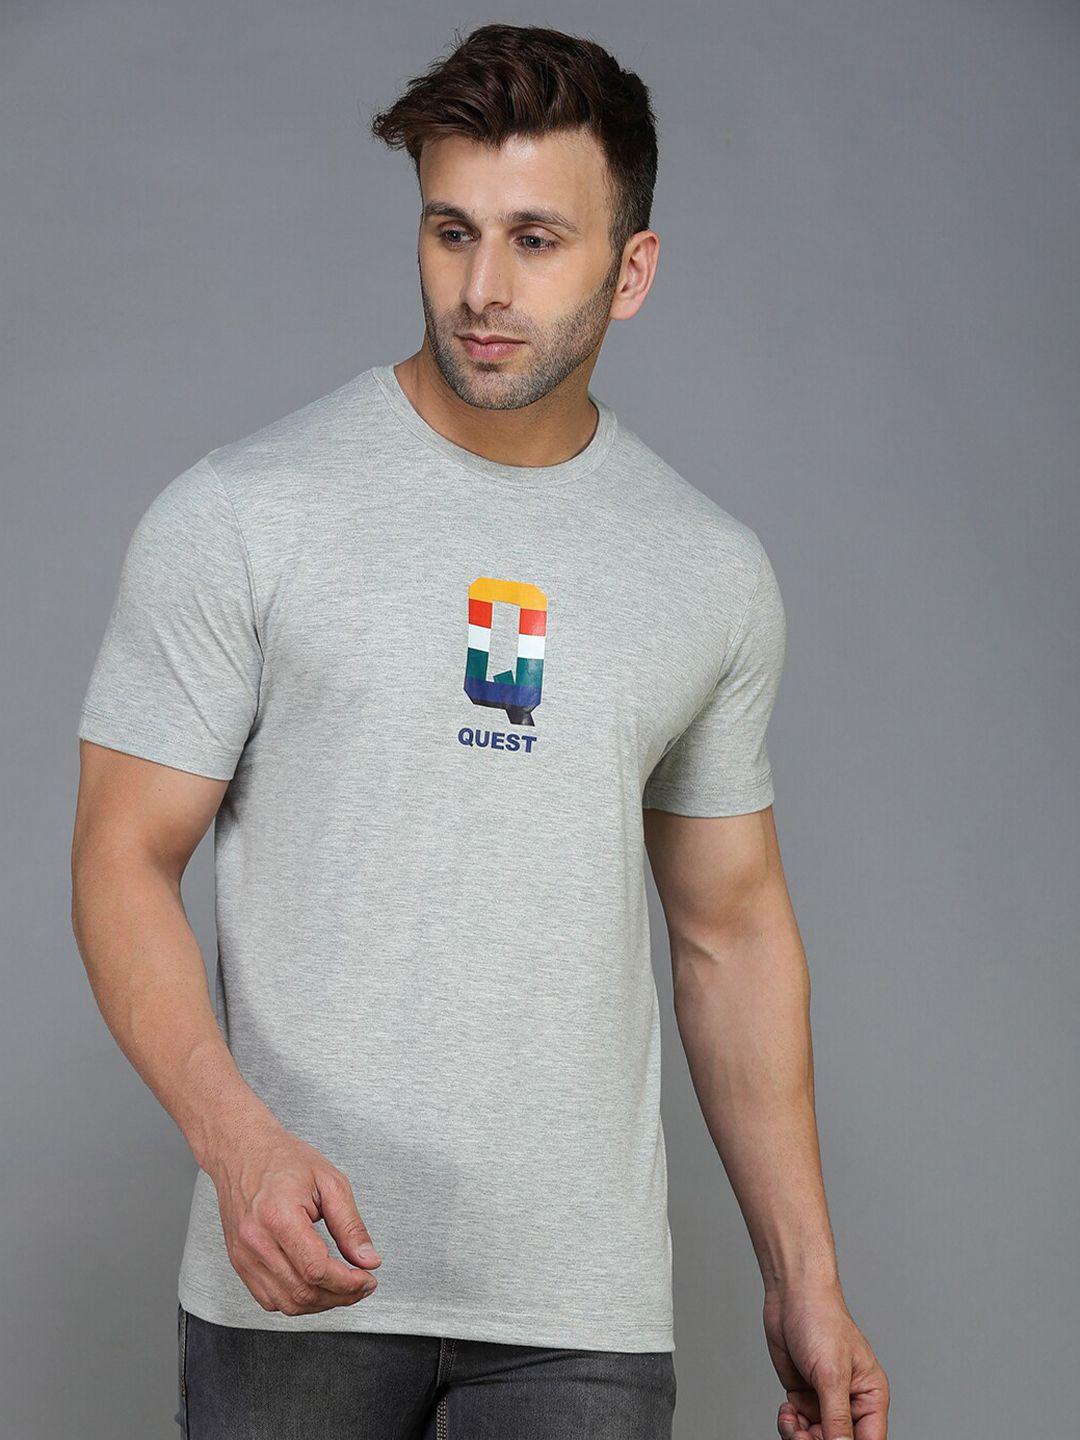 tqs men grey melange & lunar rock typography printed applique t-shirt